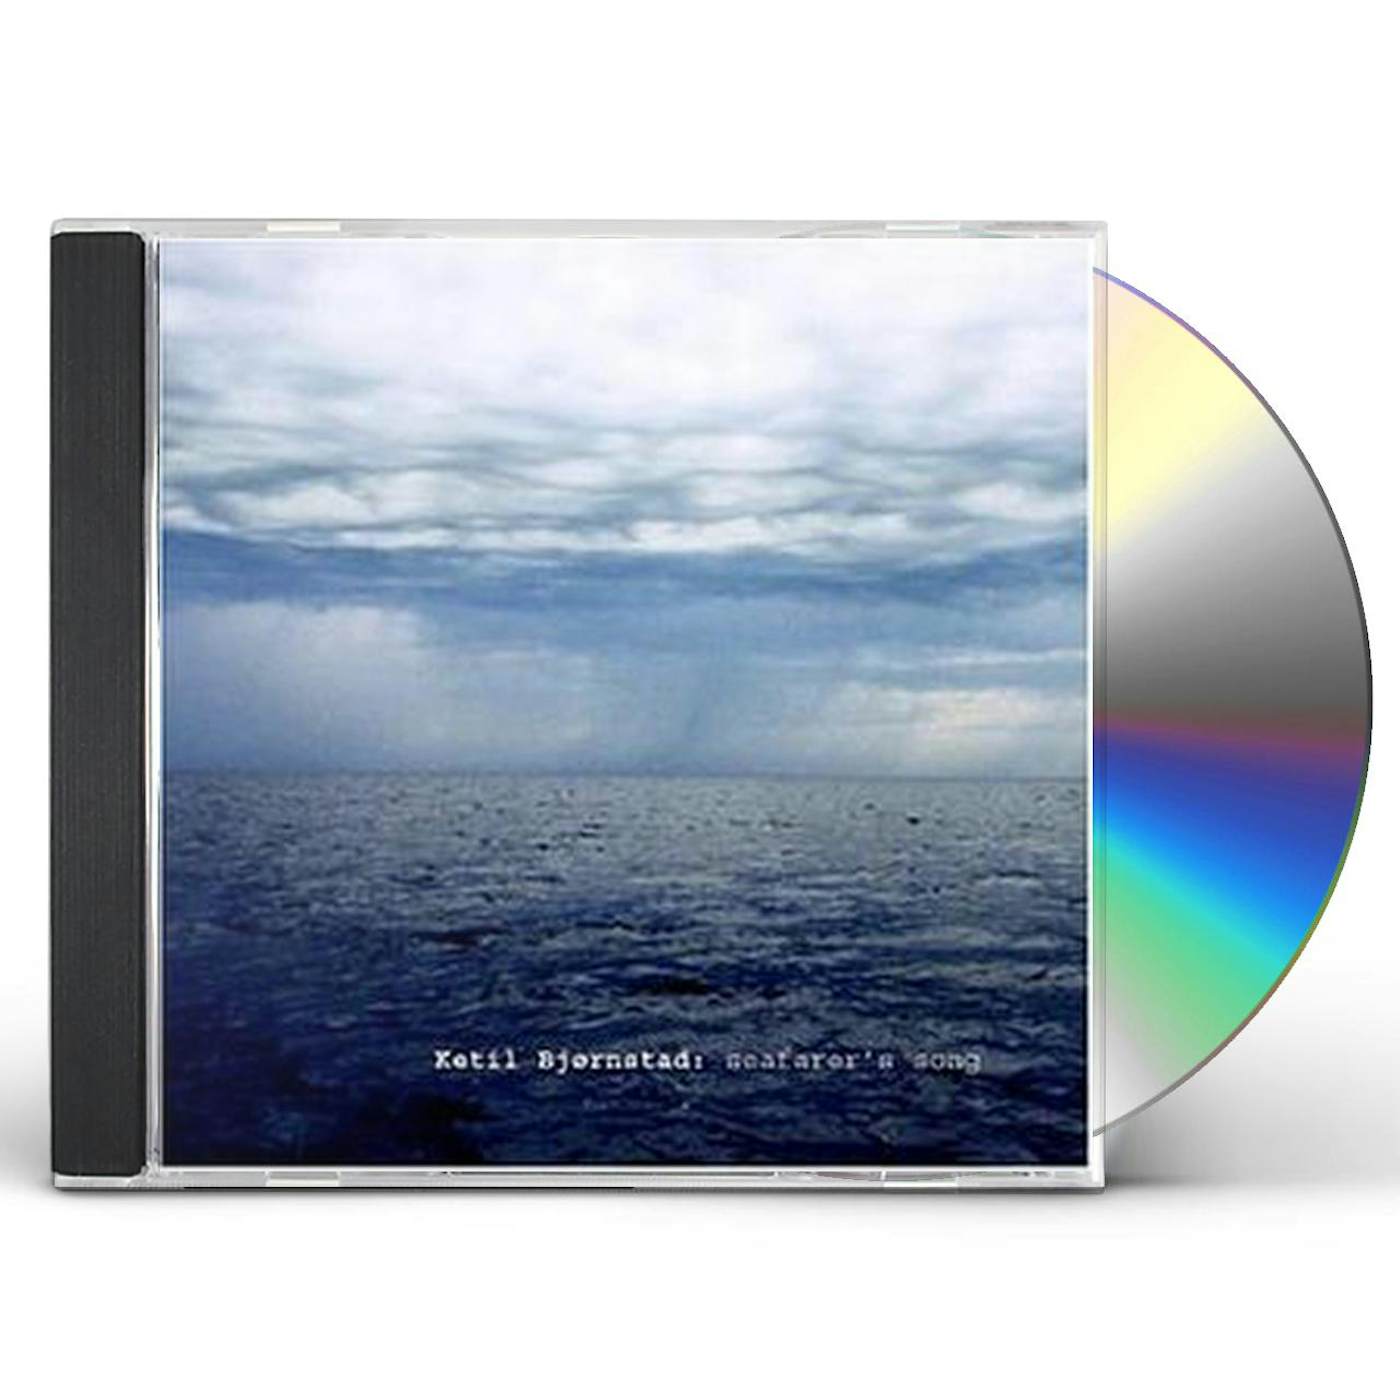 Ketil Bjørnstad SEAFARER'S SONG CD